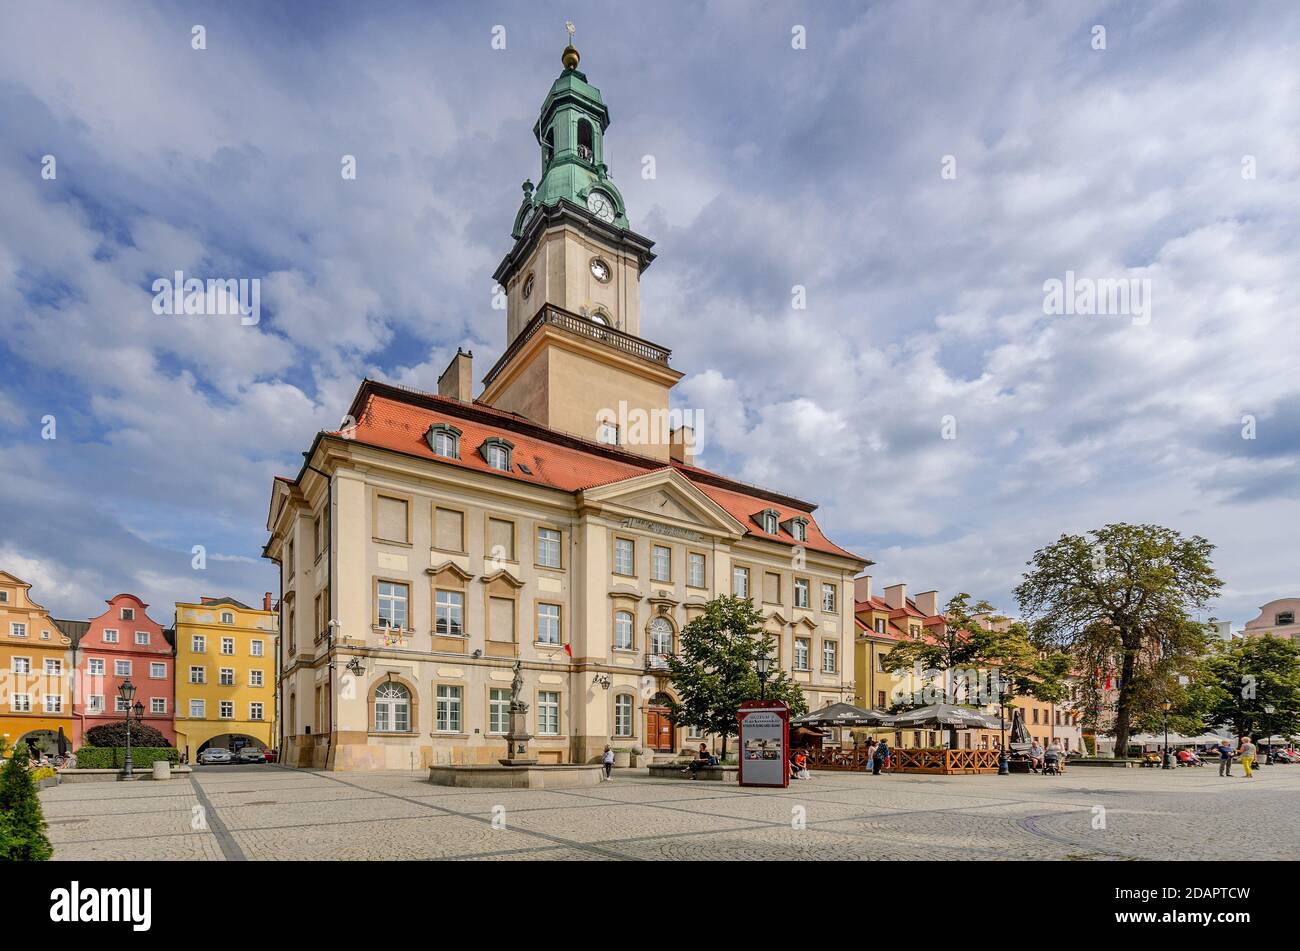 El ayuntamiento en el mercado. Ciudad de Jelenia Gora, (alemania: Hirschberg im Riesengebirge), provincia de Baja Silesia, Polonia. Foto de stock